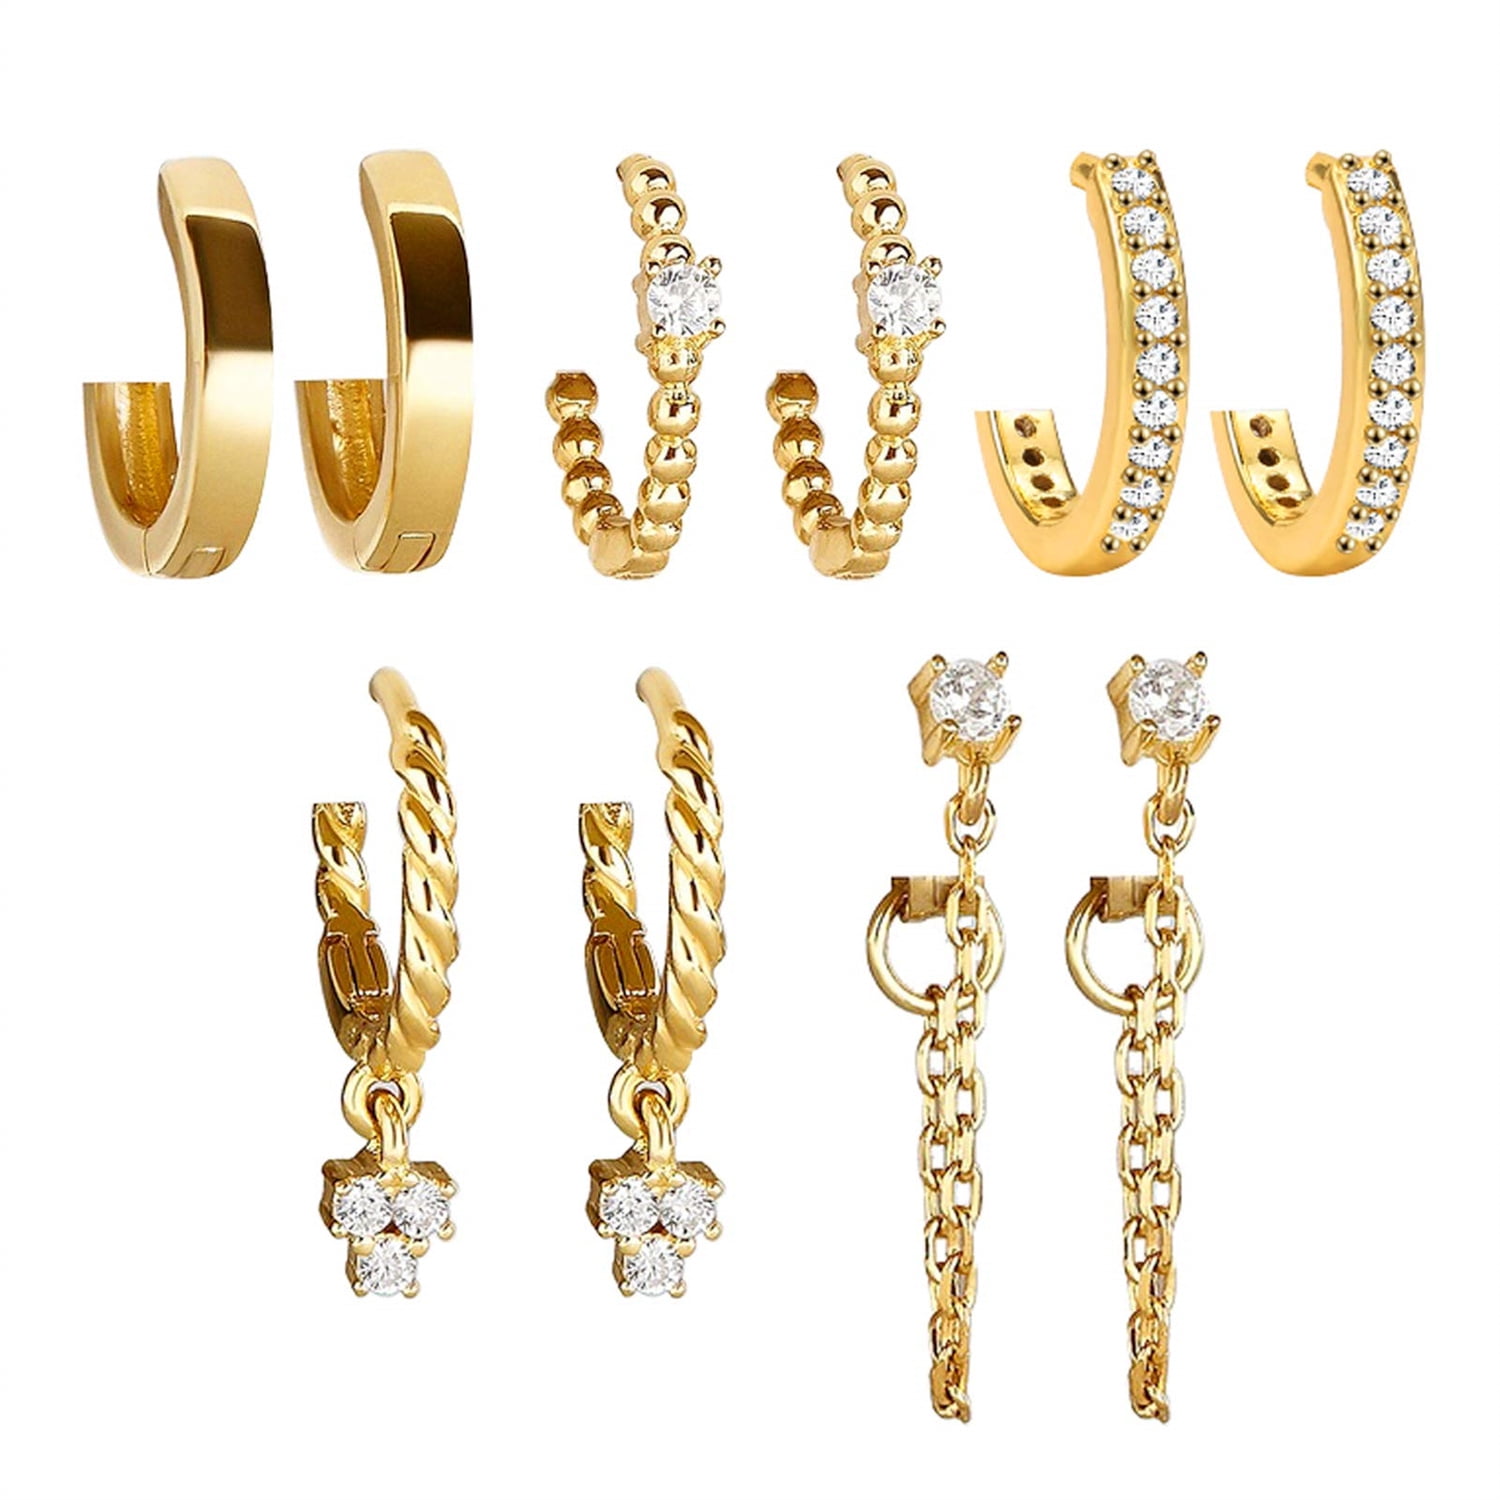 Wansan Tassel Earrings for Women Girls Leaf Chain Fringe Earrings Bohemian Dangle Drop Stud Earrings Fashion Jewelry Valentine Birthday 